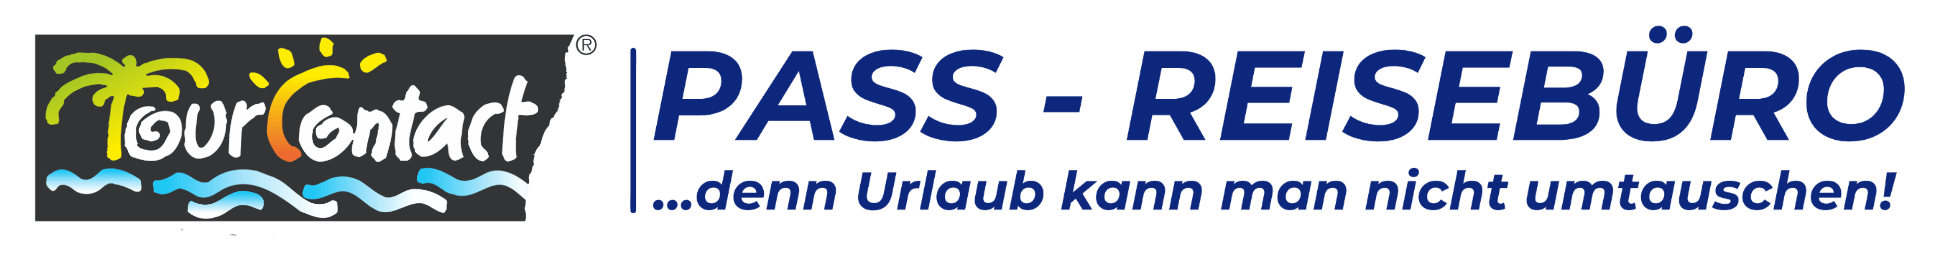 PASS-REISEBÜRO Logo